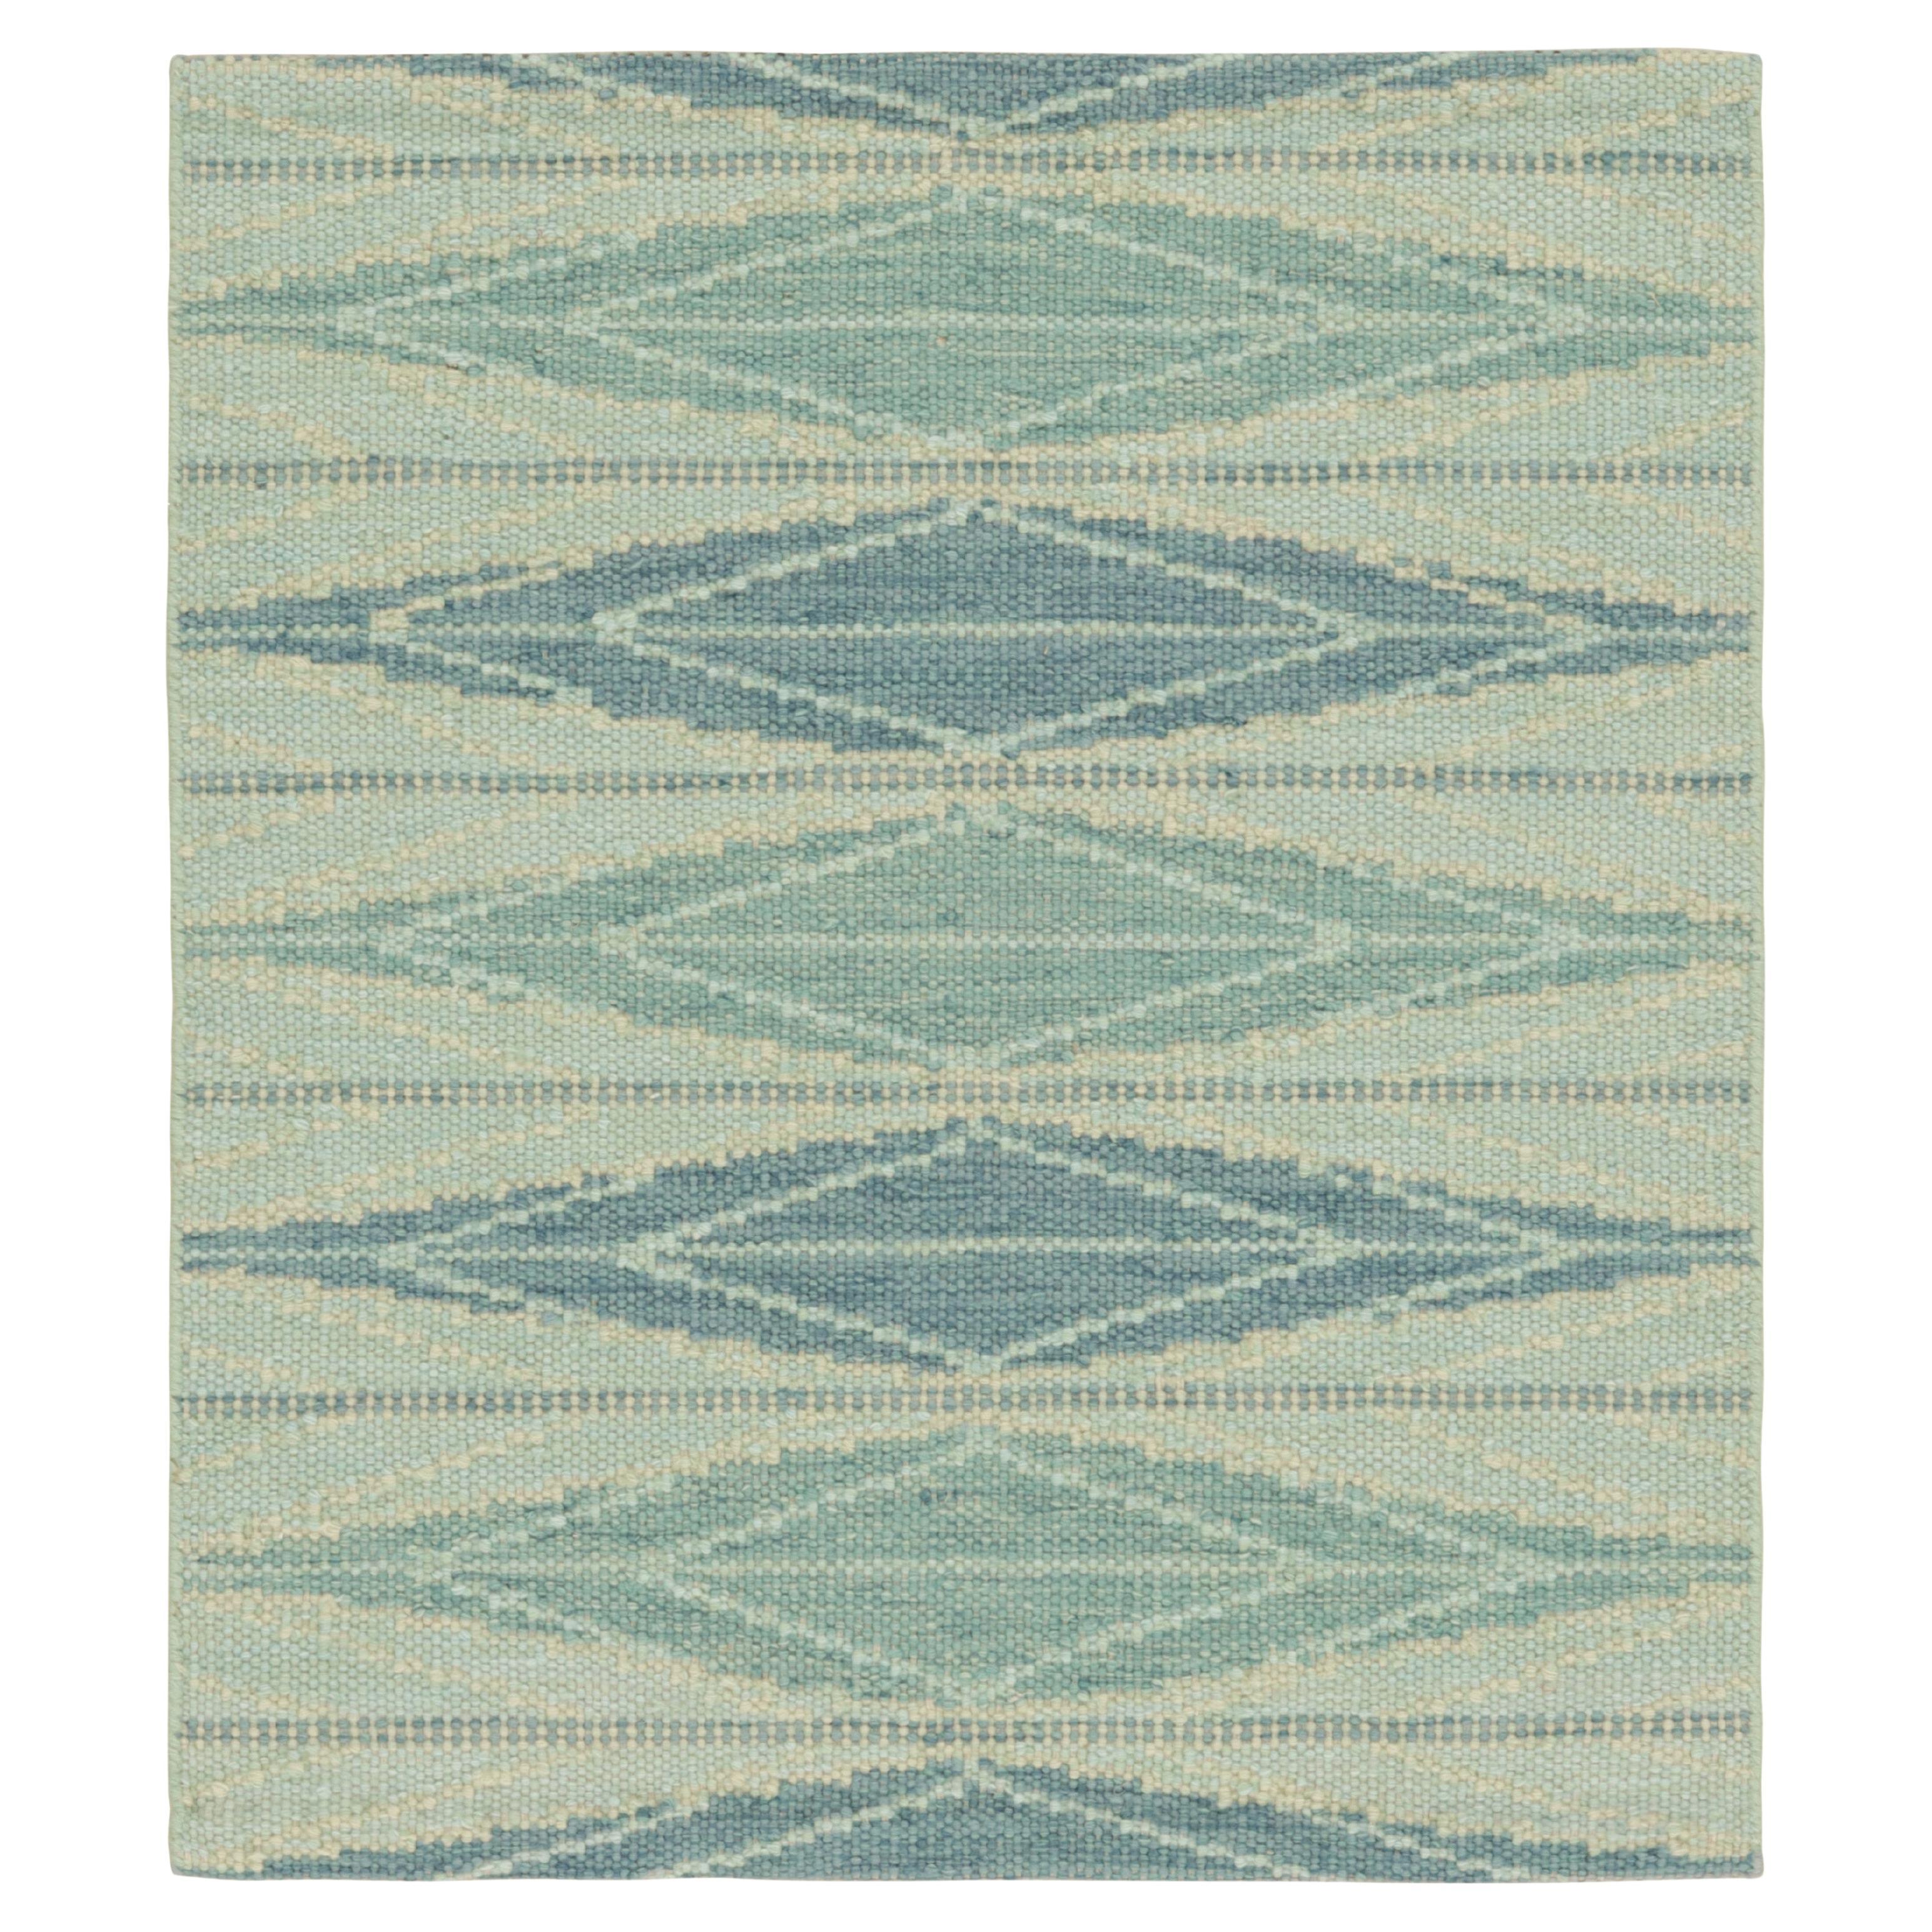 Rug & Kilim's Scandinavian Style Square Rug in Blue, with Geometric Patterns (tapis carré de style scandinave à motifs géométriques)